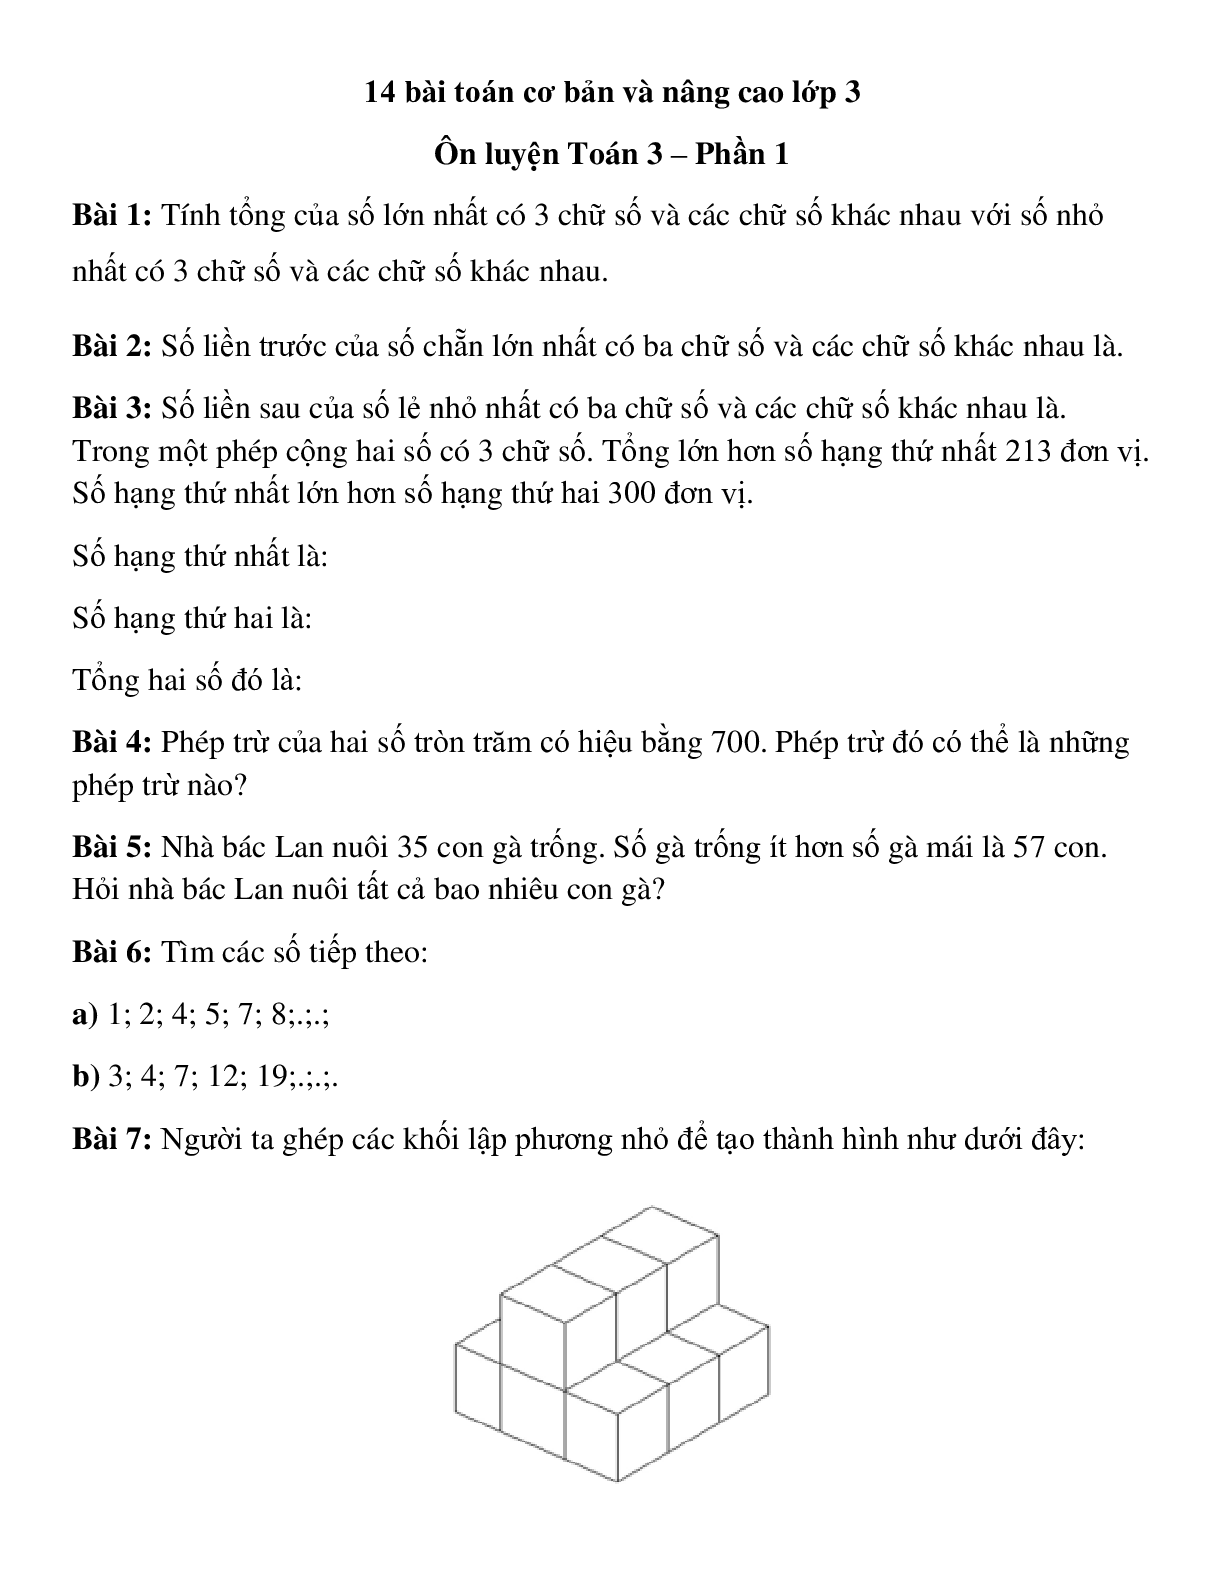 14 bài toán về Toán lớp 3 cơ bản, nâng cao Phần 1 (trang 1)